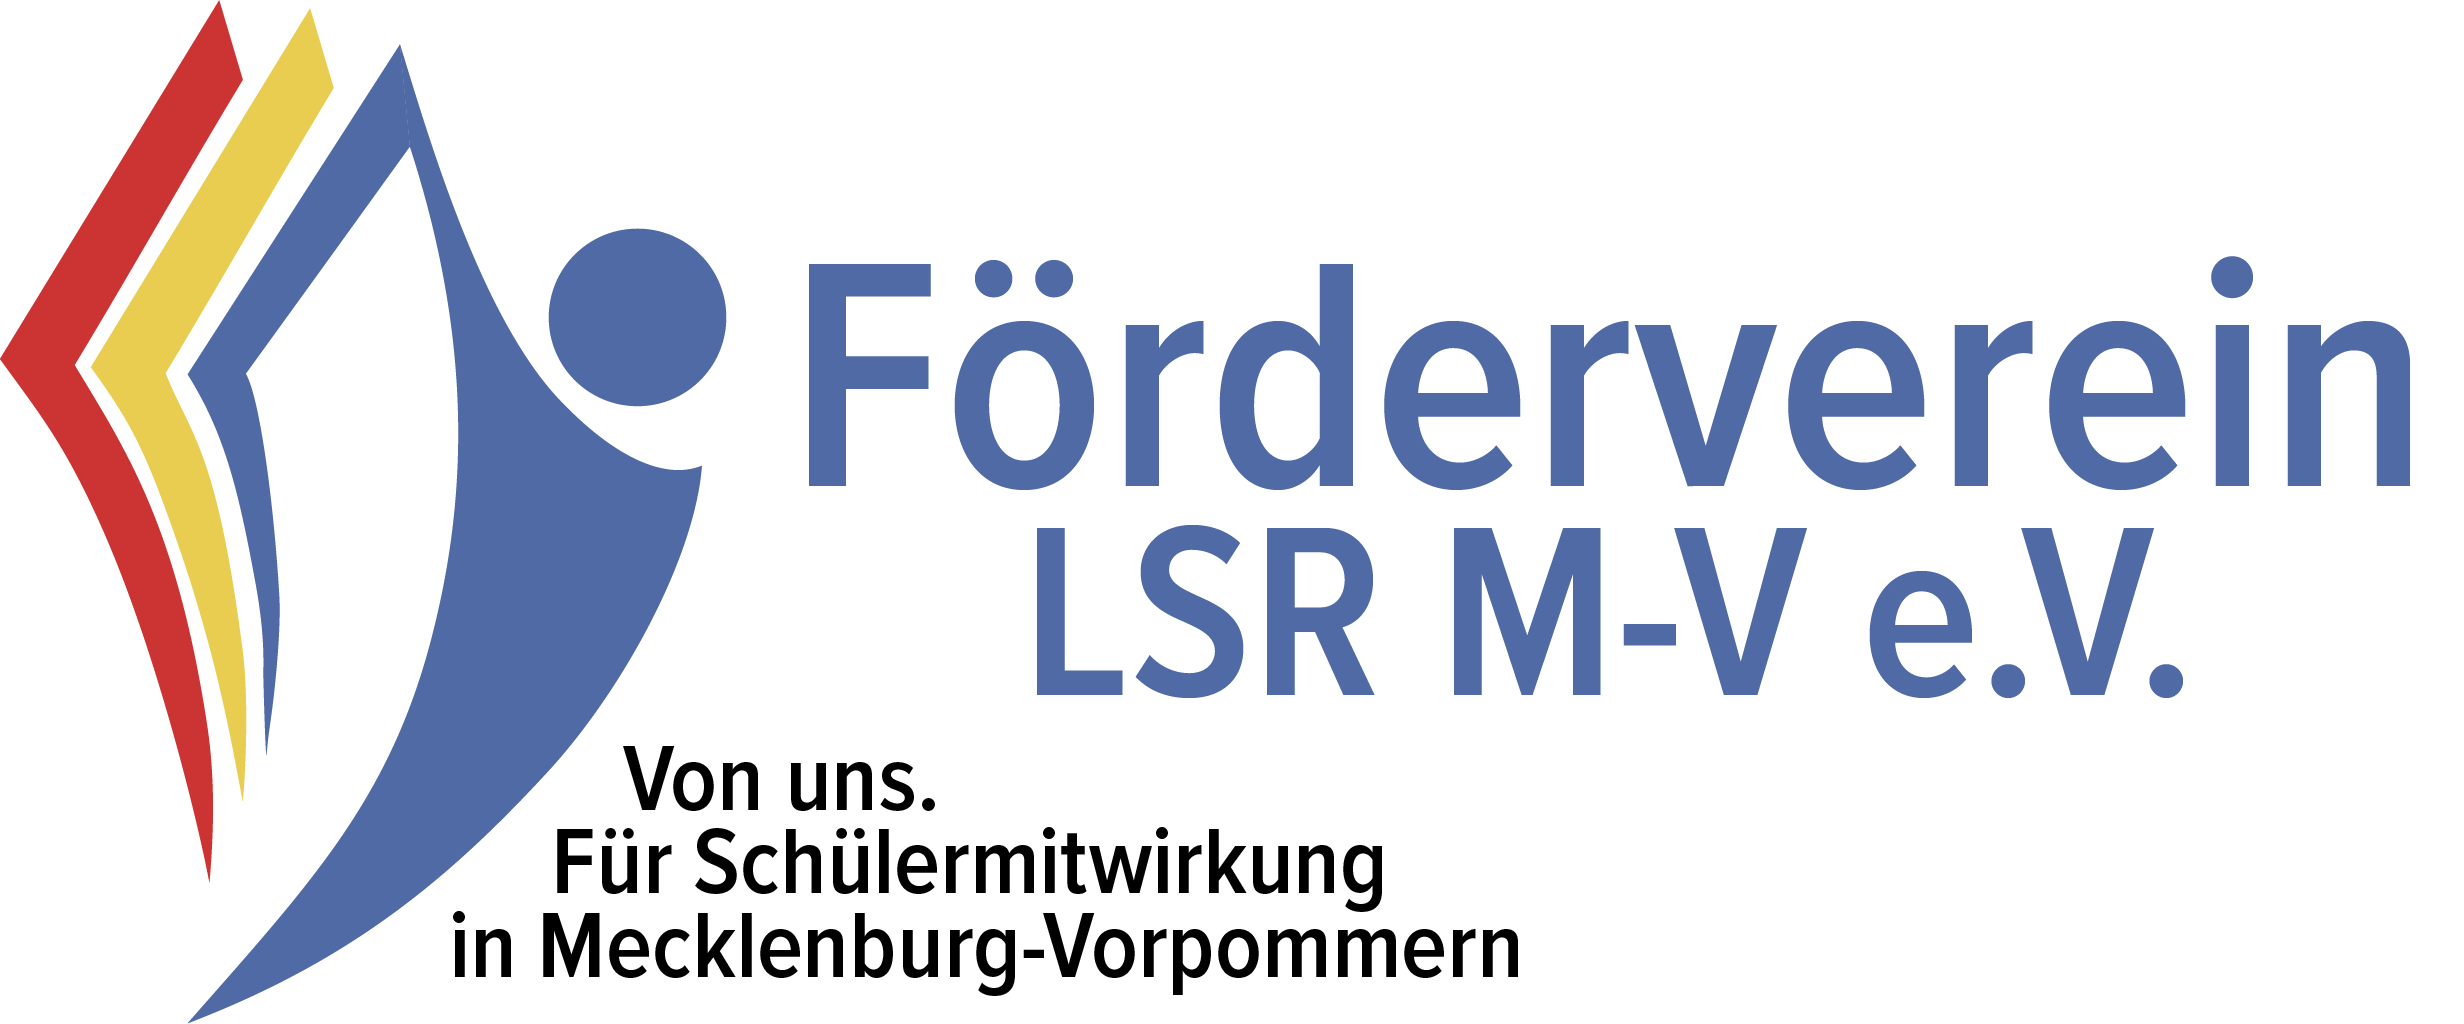 Förderverein Landesschülerrat M-V e.V.